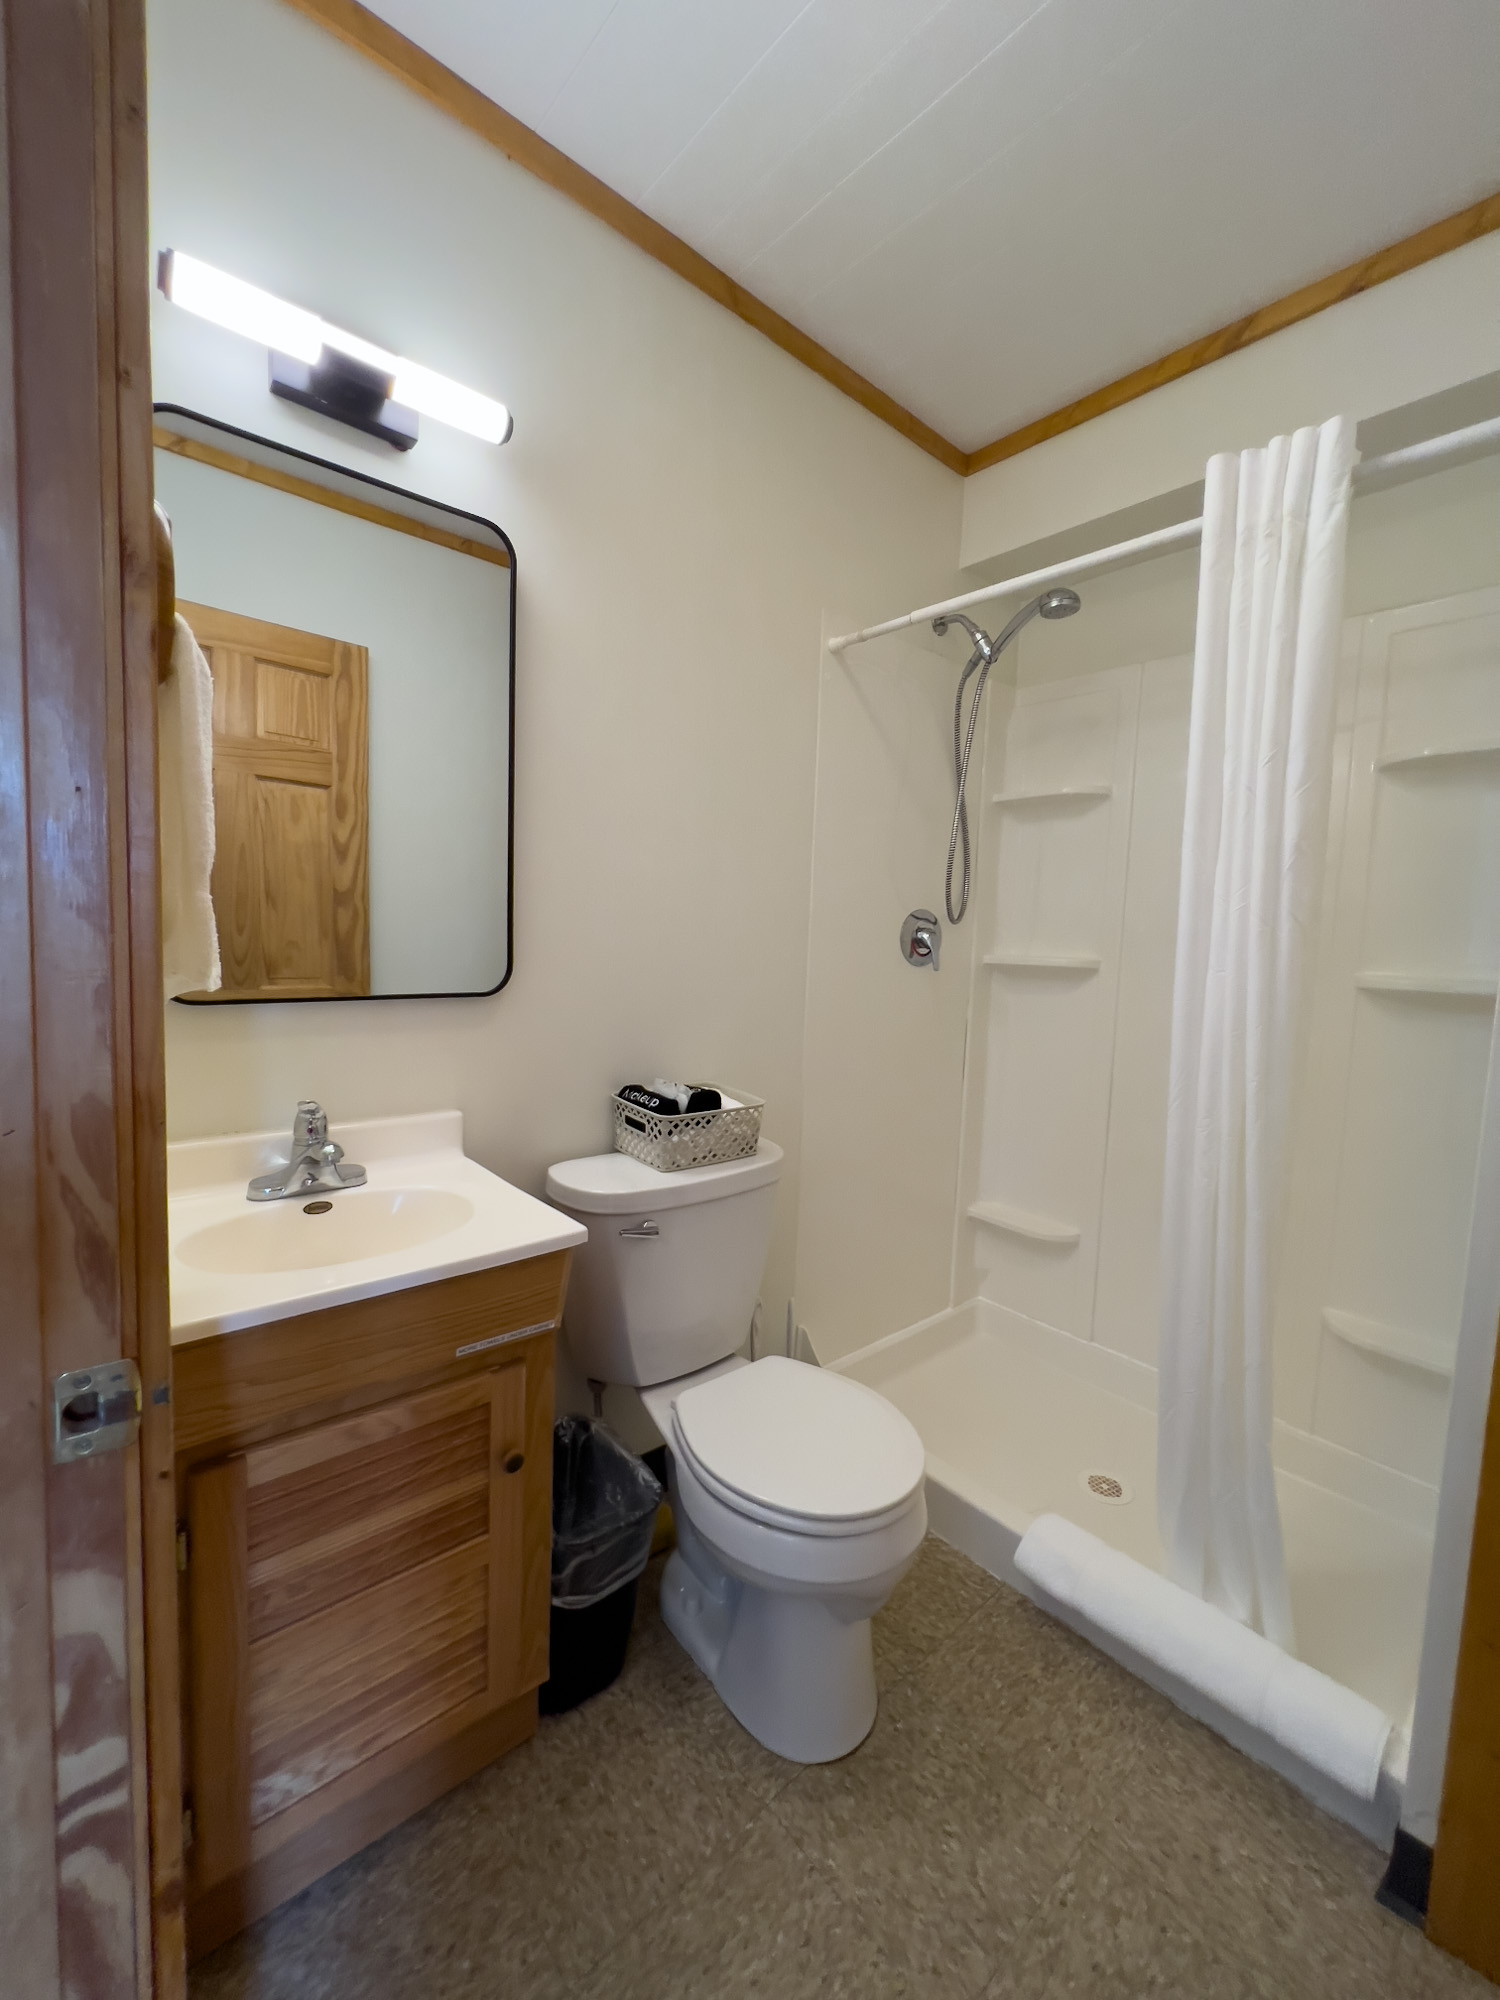 Cabin 3 Bathroom - at the Sleeping Bear Resort